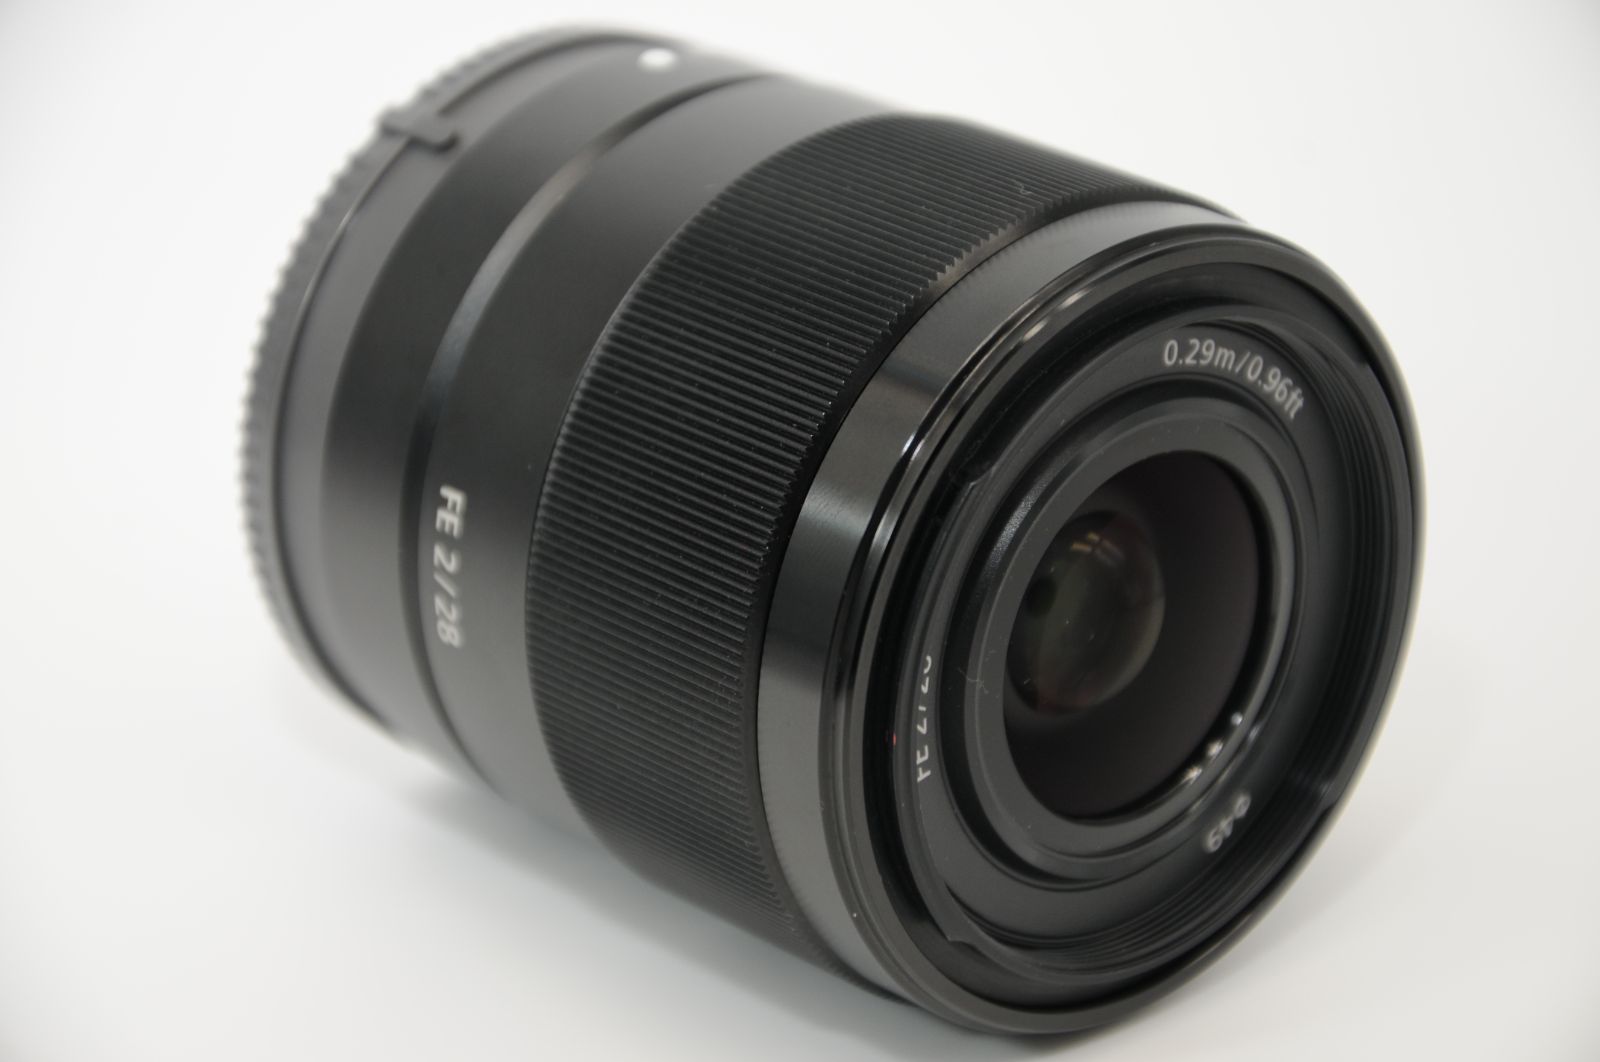 Sony フルサイズ用単焦点レンズ SEL28F2.0 美品